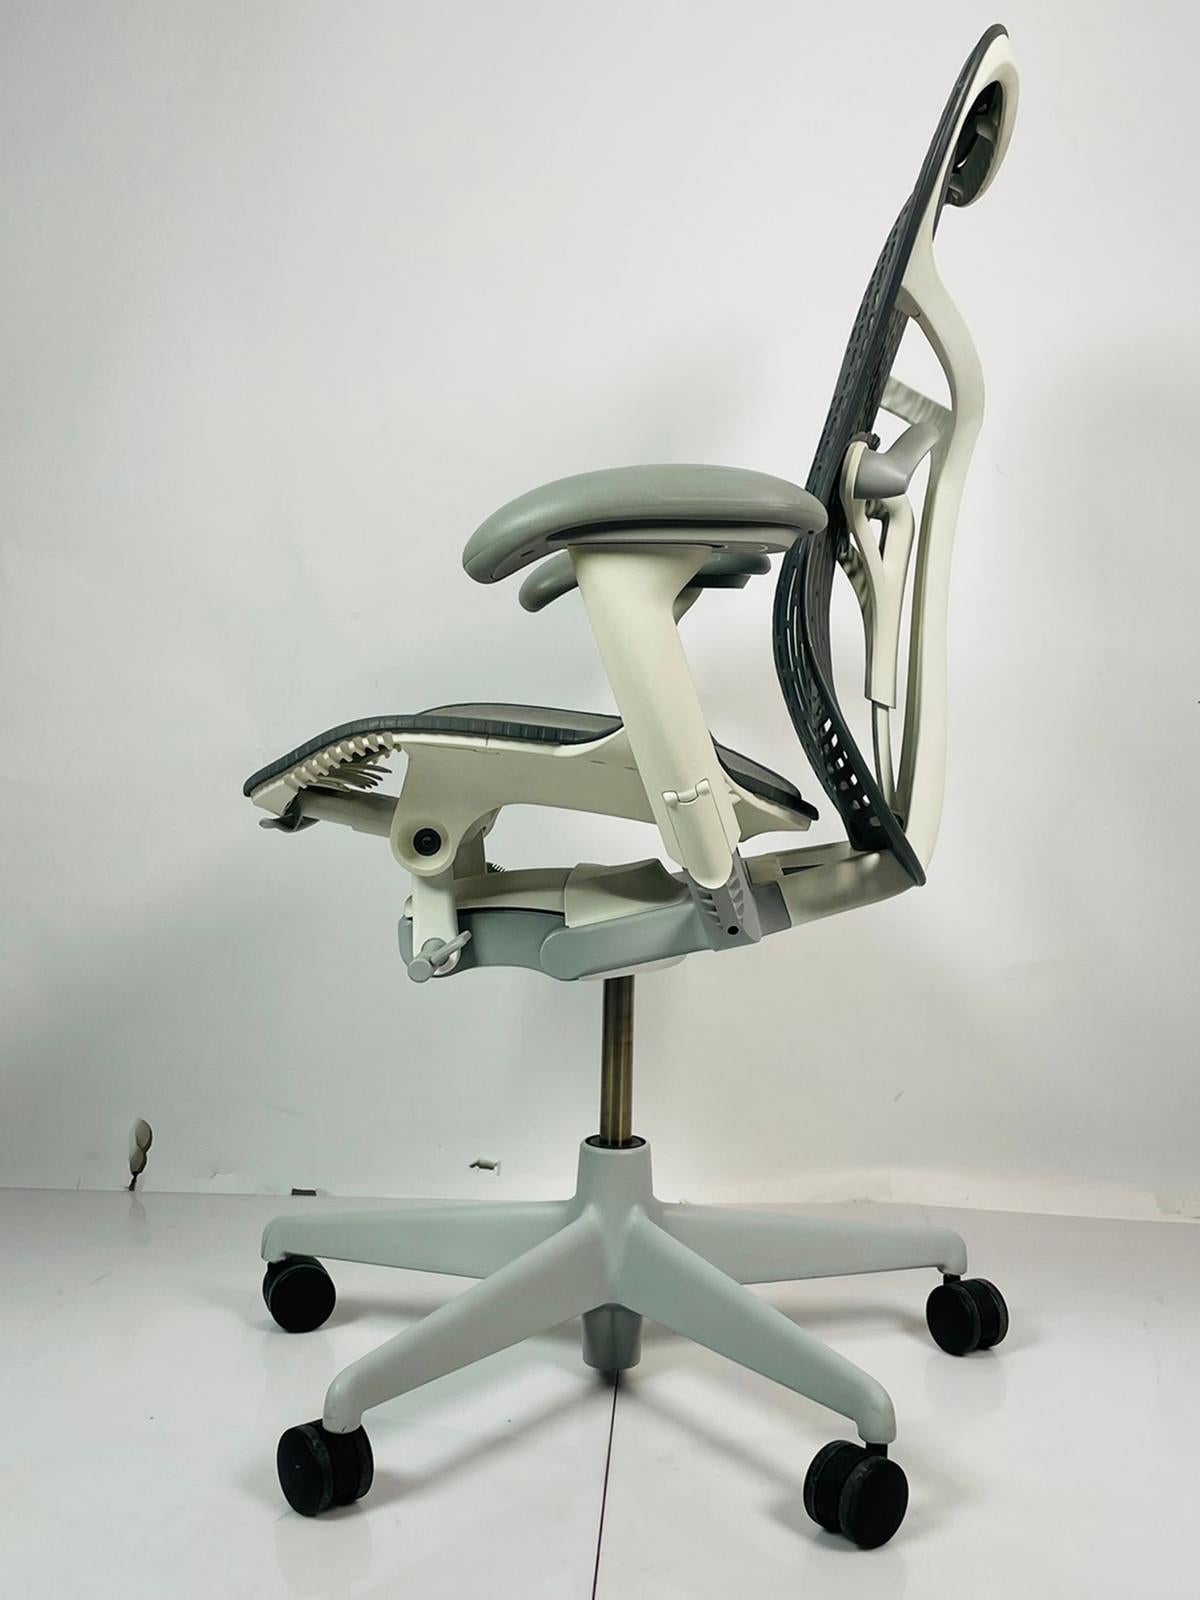 Der Mirra 2 Bürostuhl von Studio 7.5 für Herman Miller ist die perfekte Mischung aus Komfort, Stil und Funktionalität. Dieser graue Bürostuhl wurde 2015 in den USA hergestellt und ist ein Muss für jeden modernen Arbeitsplatz. Ausgestattet mit Rädern